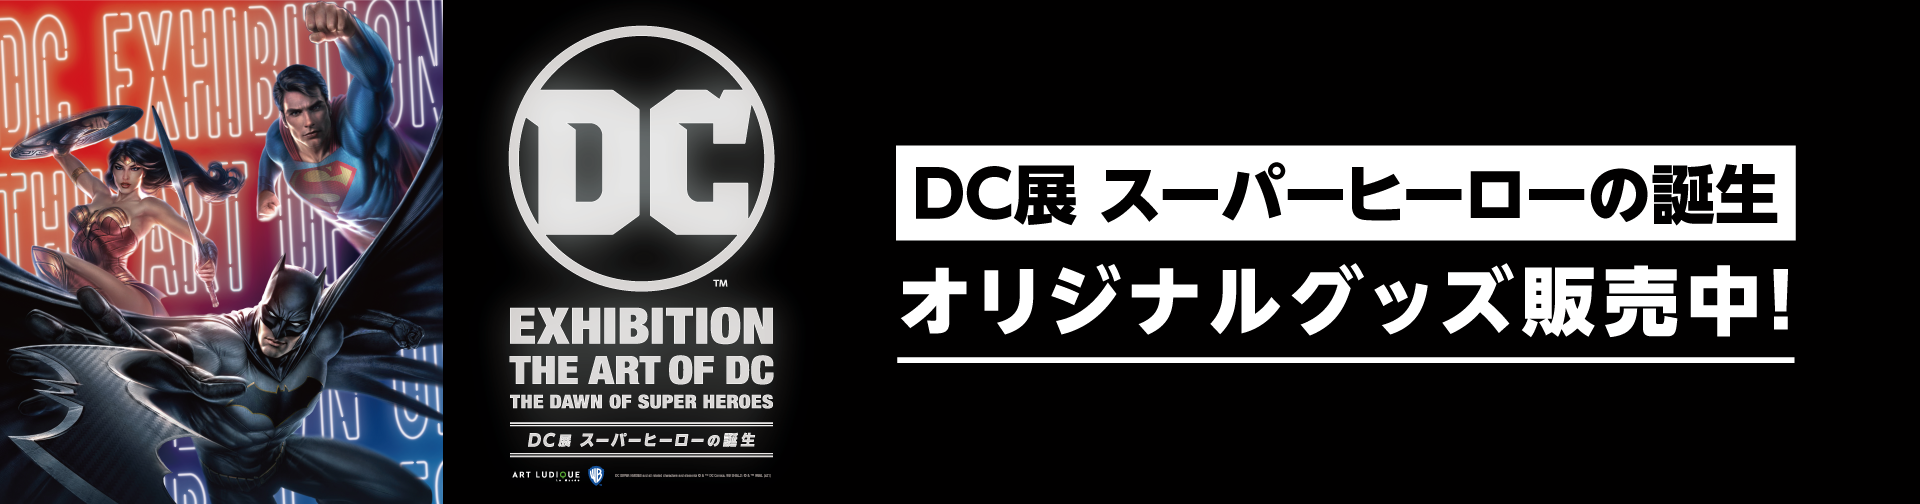 DC展 スーパーヒーローの誕生 展覧会オリジナルグッズ